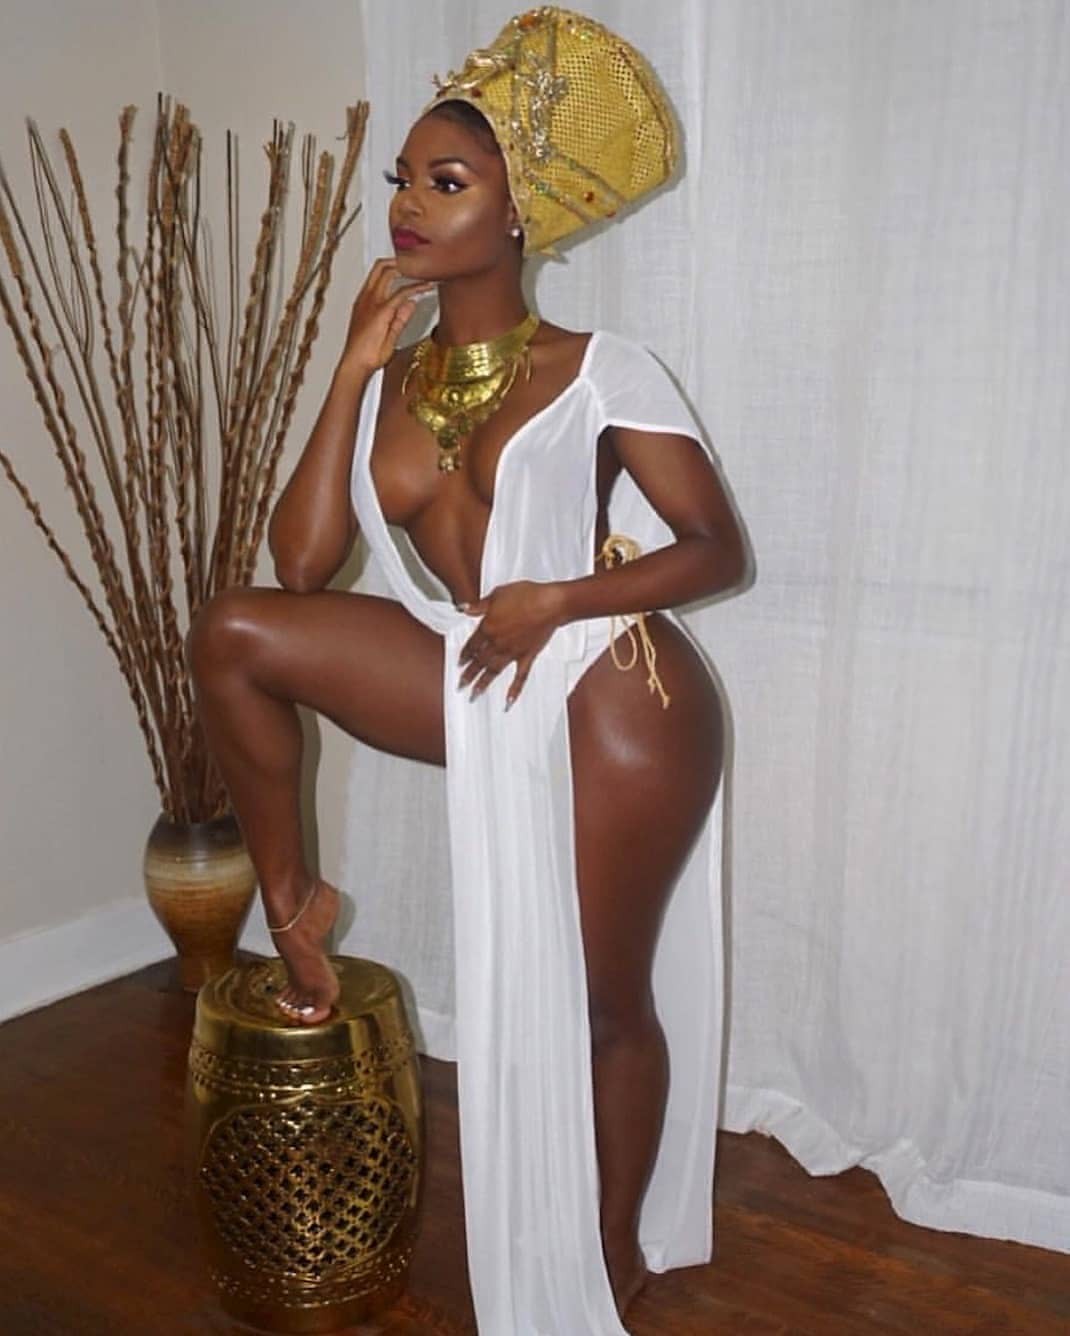 Sesión de fotos de modelo de Instagram afro con curvas: chicas negras calientes,  Adolescentes calientes de Instagram,  fotos calientes de insta,  chicas calientes de insta,  Caliente Bikini Fotos,  Fotos De Chicas Negras En Bikini,  Instapics de chicas negras  